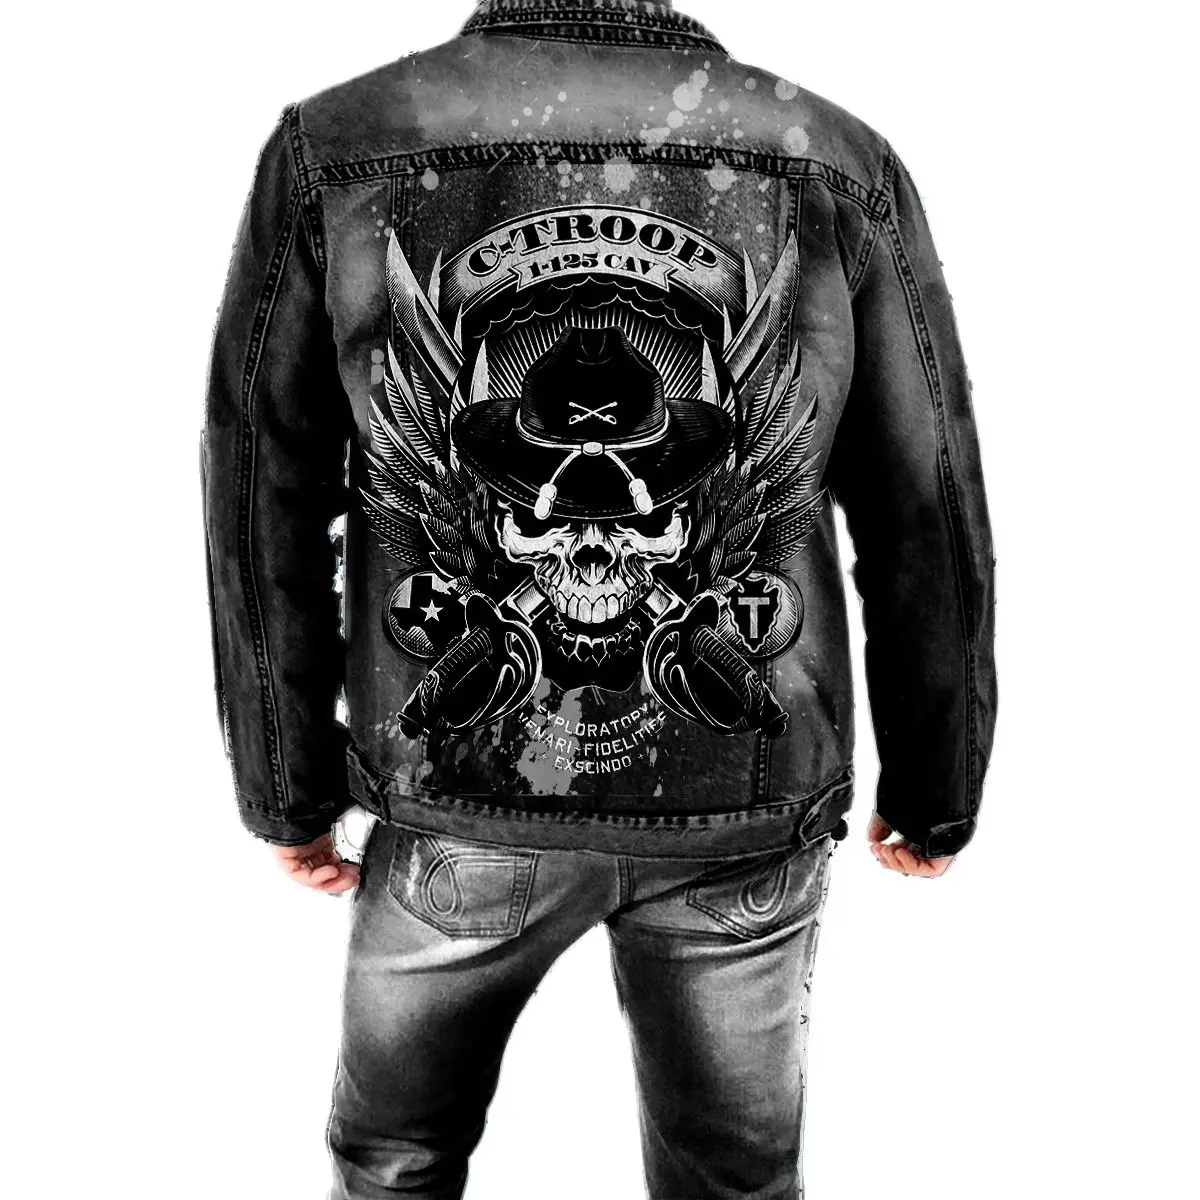 

Мужская джинсовая куртка с принтом черепа, повседневная ковбойская куртка в стиле ретро, с отложным воротником, модная уличная одежда в стиле панк, Осень-зима 2023